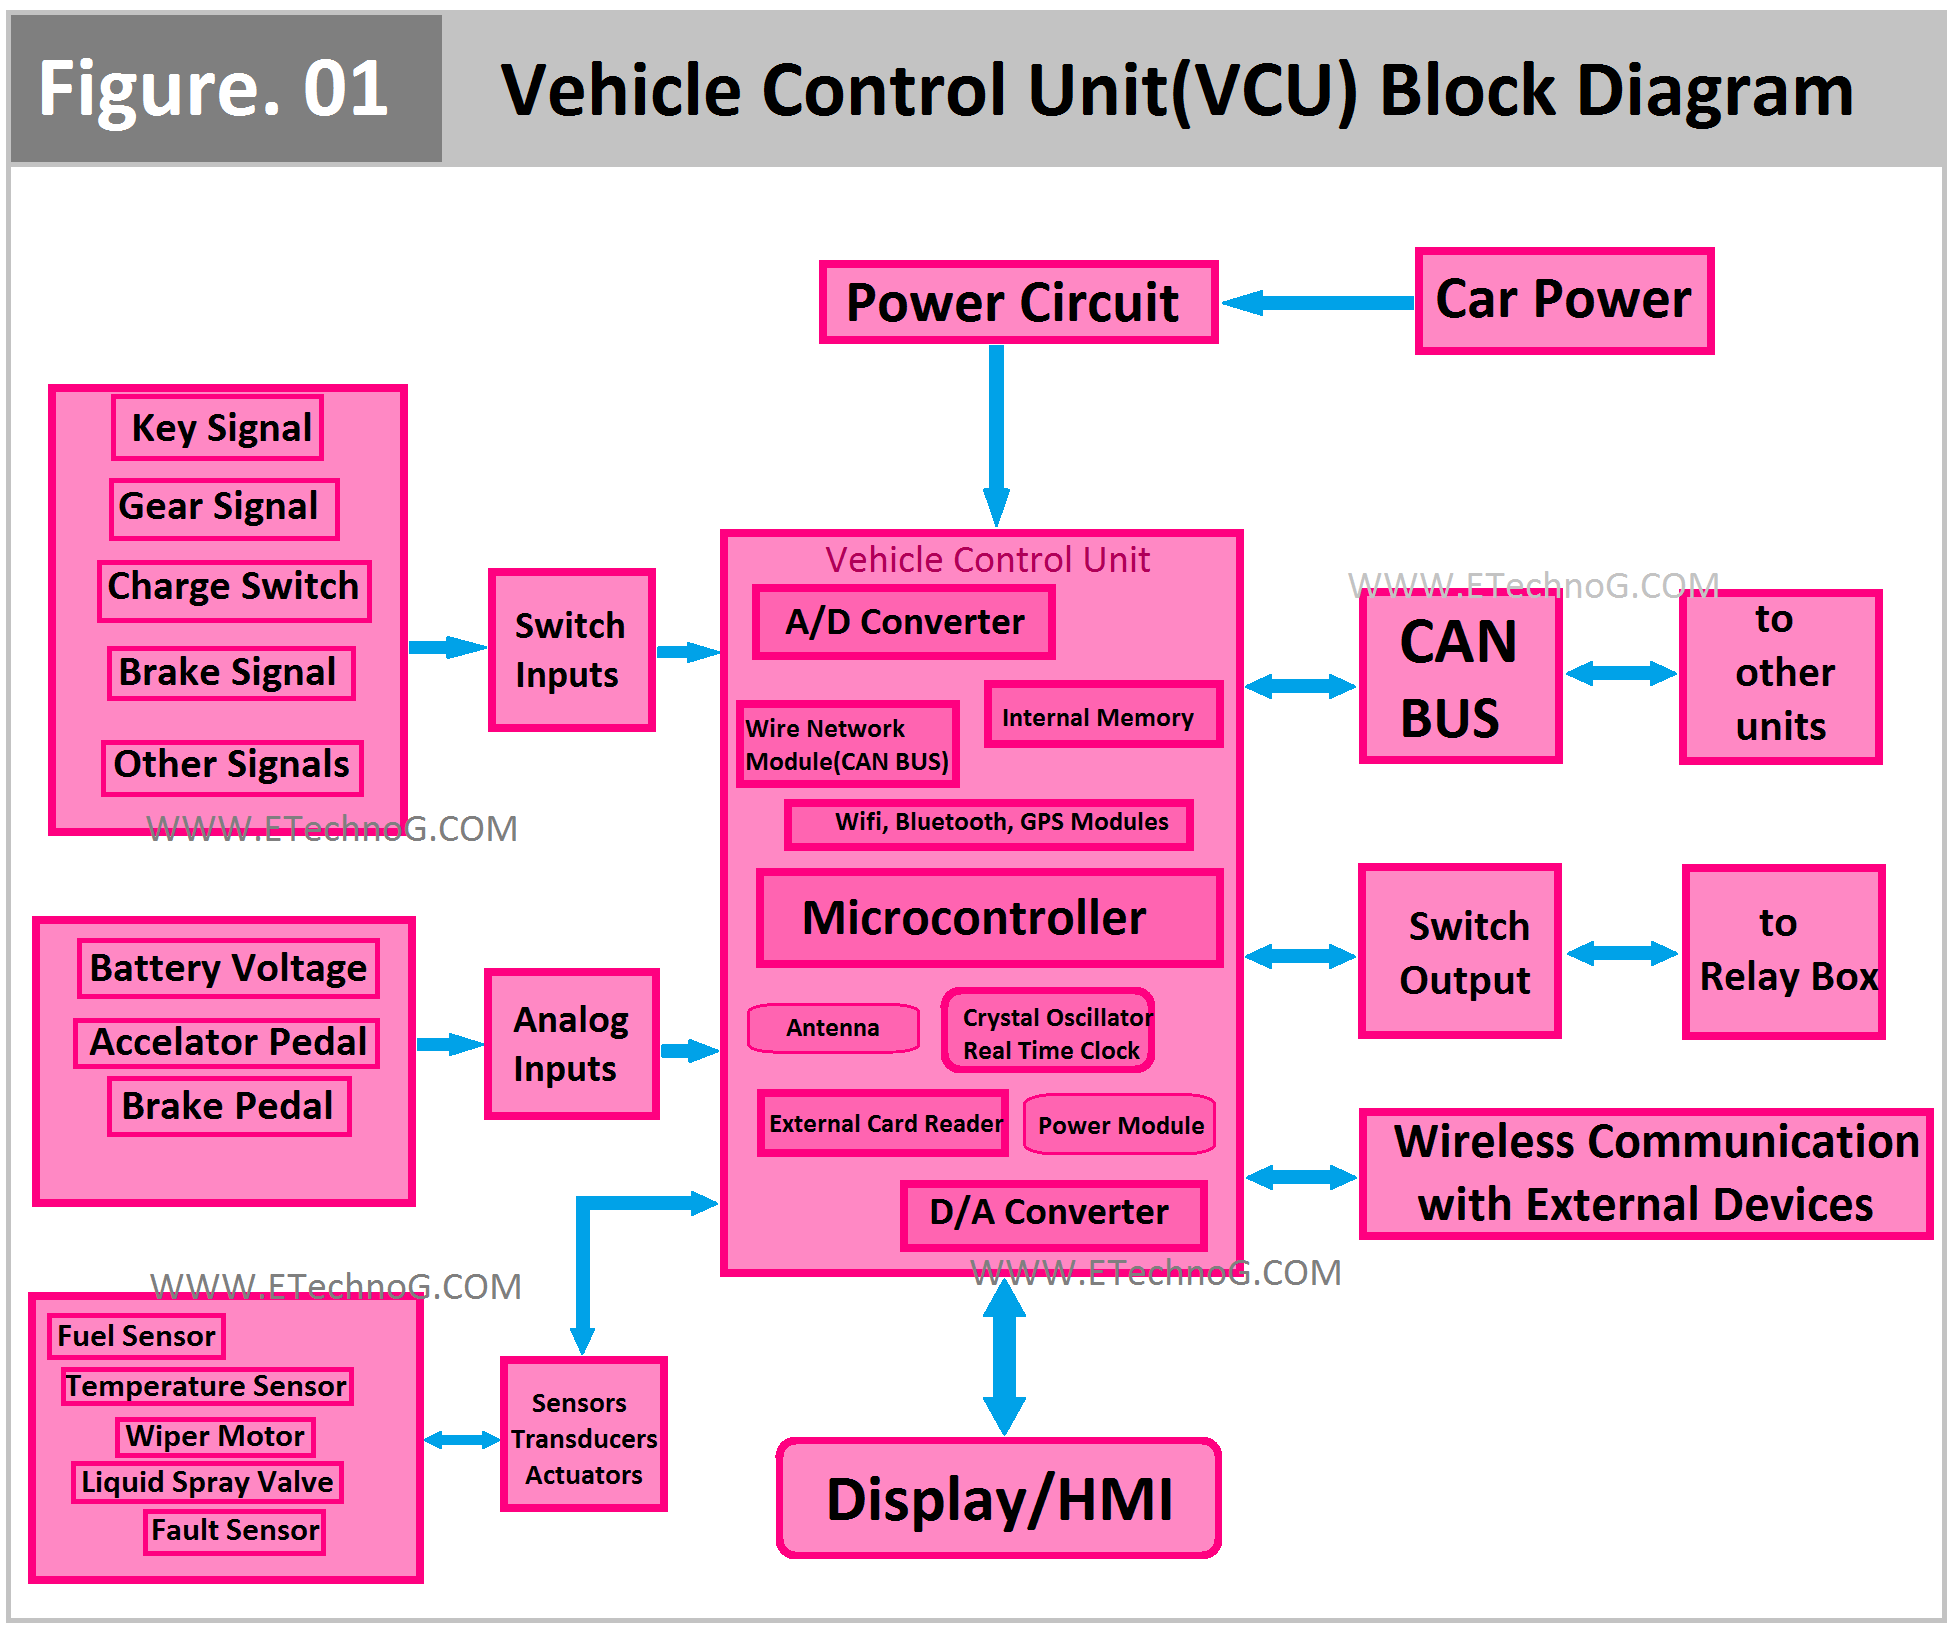 Vehicle Control Unit(VCU) Block Diagram